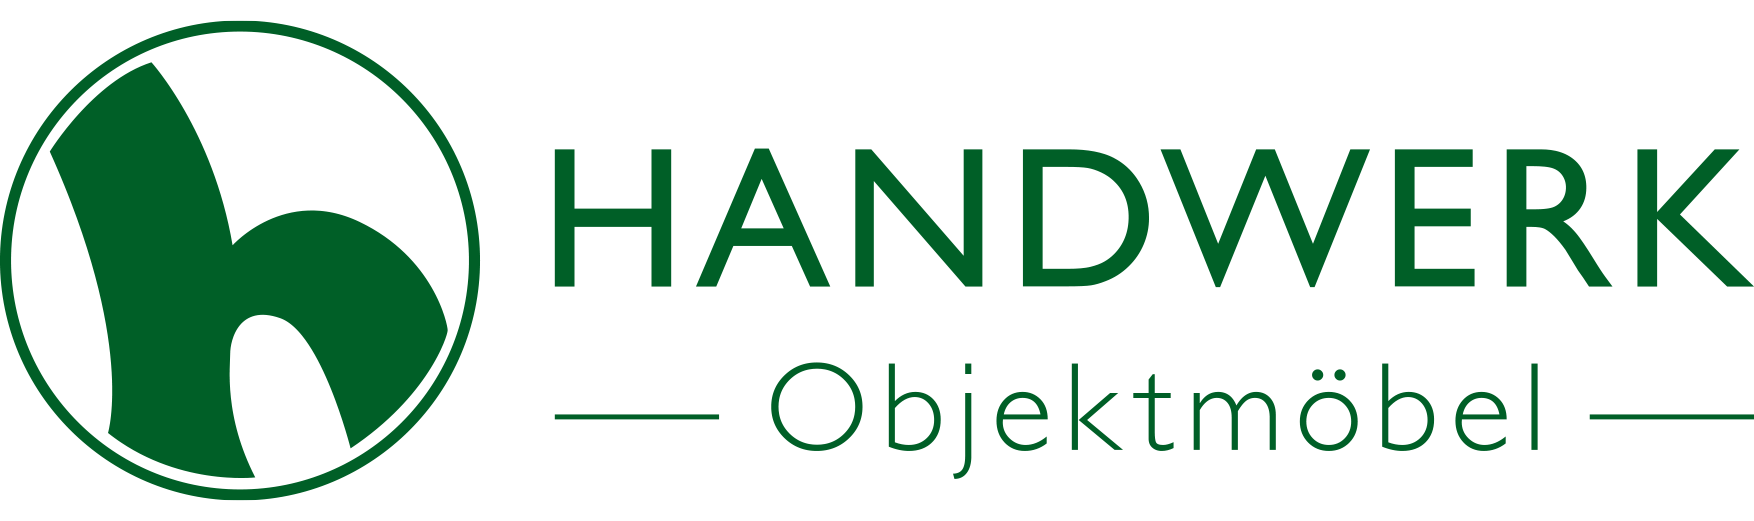 Handwerk Handels GmbH | Logo | Kundenreferenz